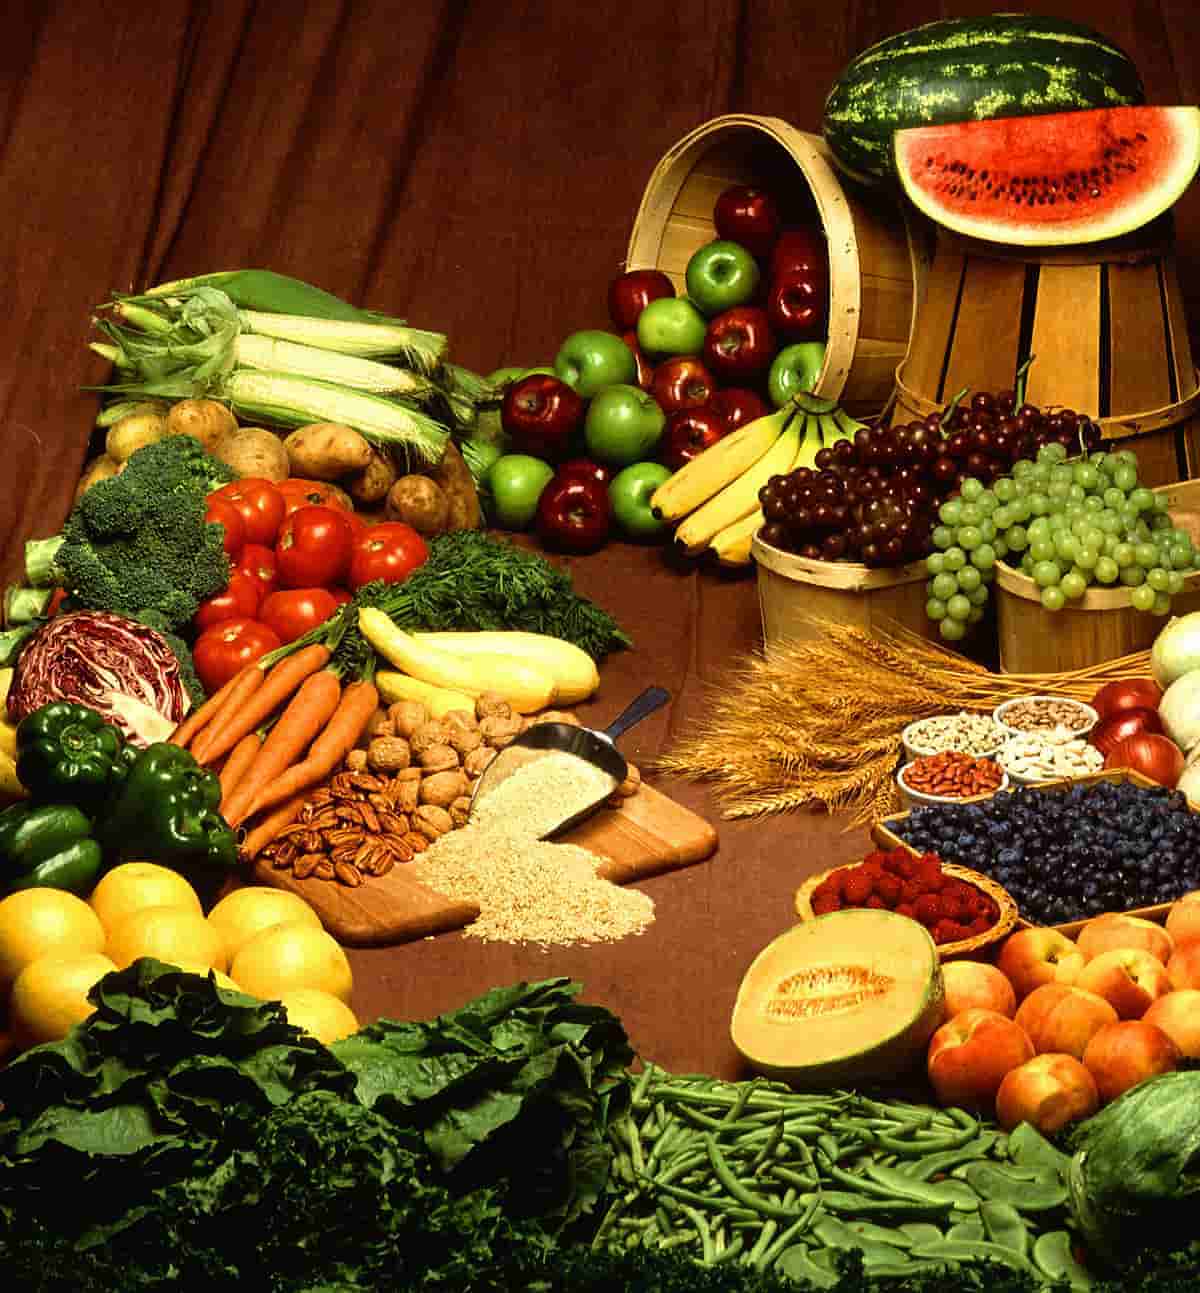 Flexitarianos: La dieta a base de plantas! buena para la salud y el planeta